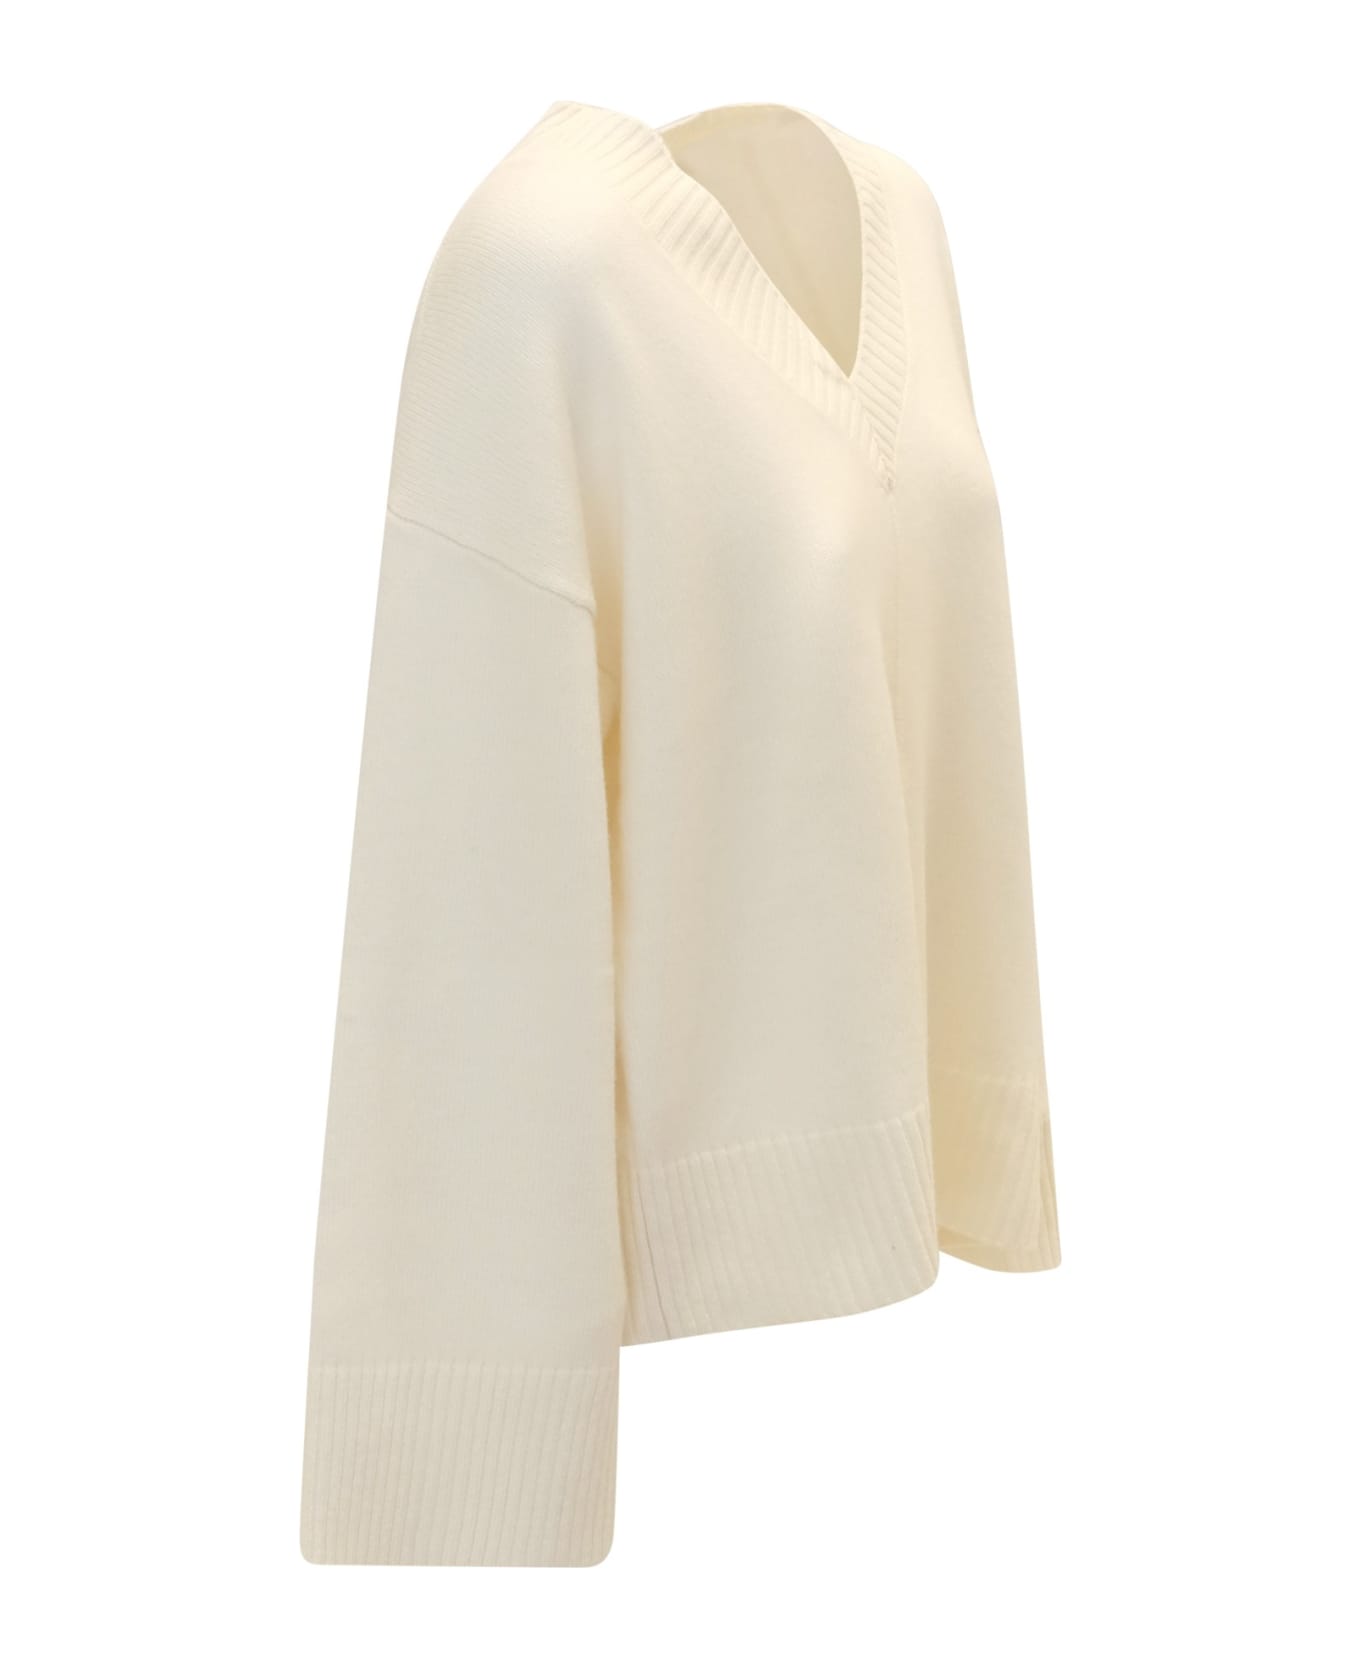 Parosh 002 Led White Sweater ニットウェア